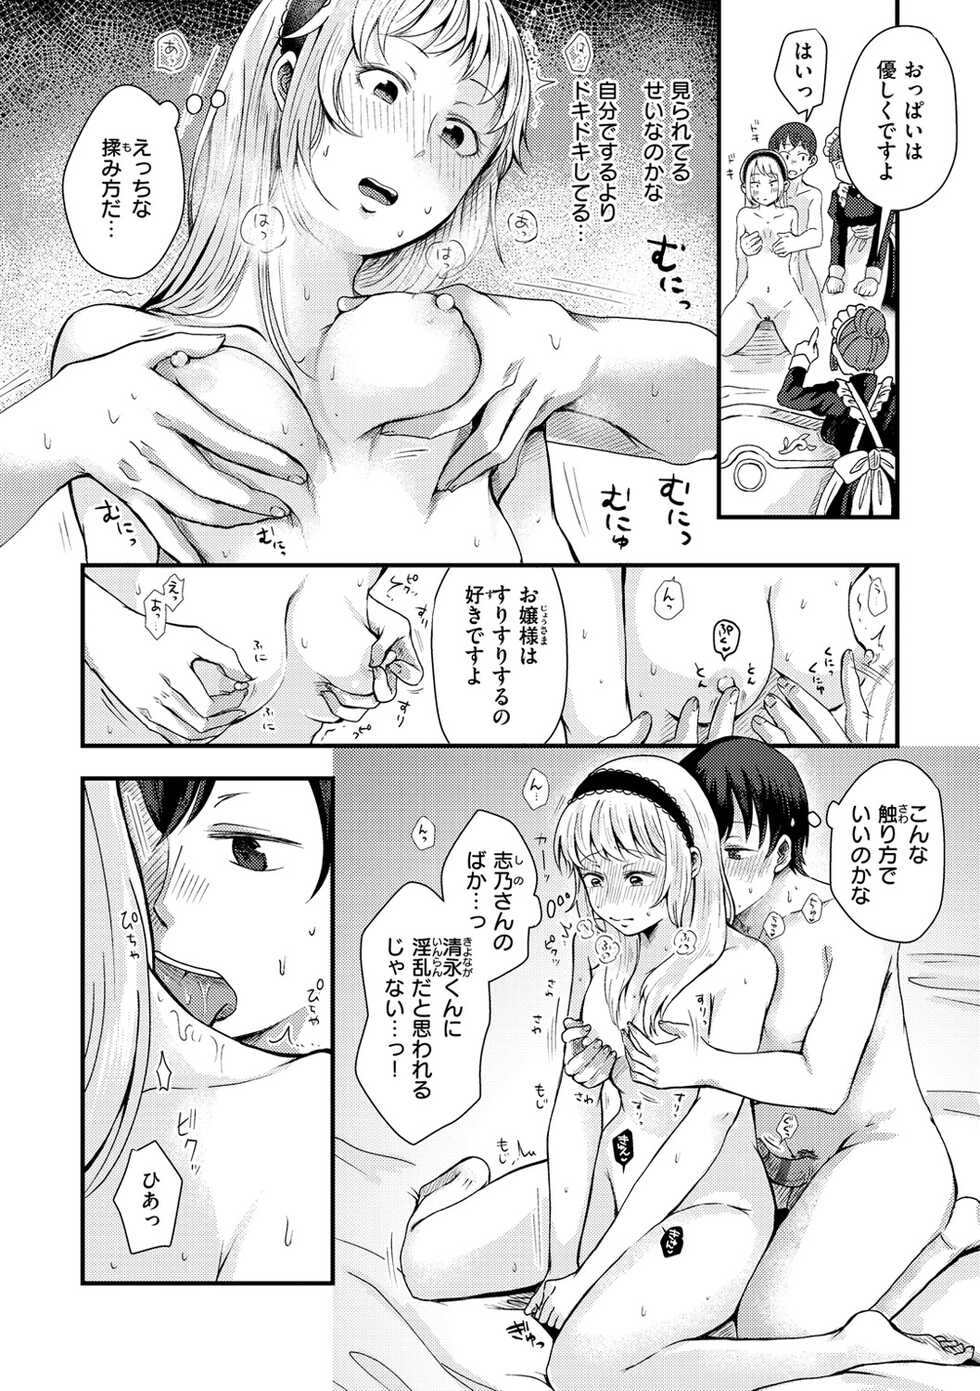 [Enoki] Kekkyoku wa Mesu nano de - She's Just a Pussy. [Digital] - Page 30